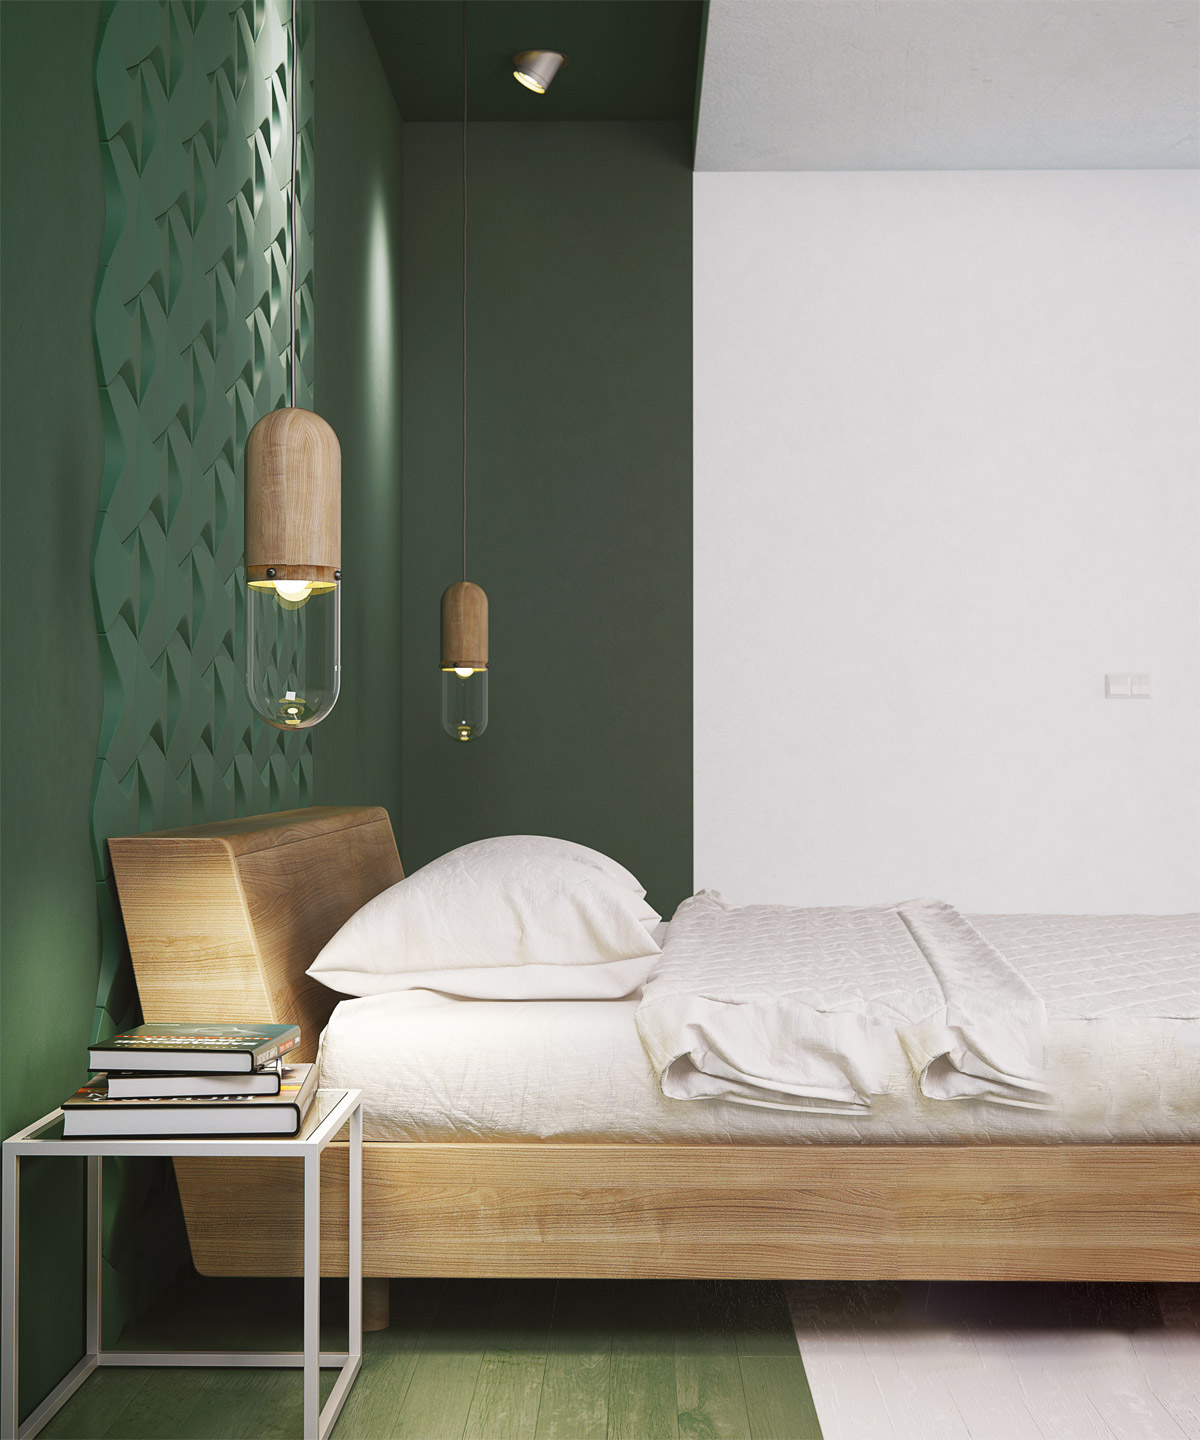 自然,充满活力的绿色卧室设计